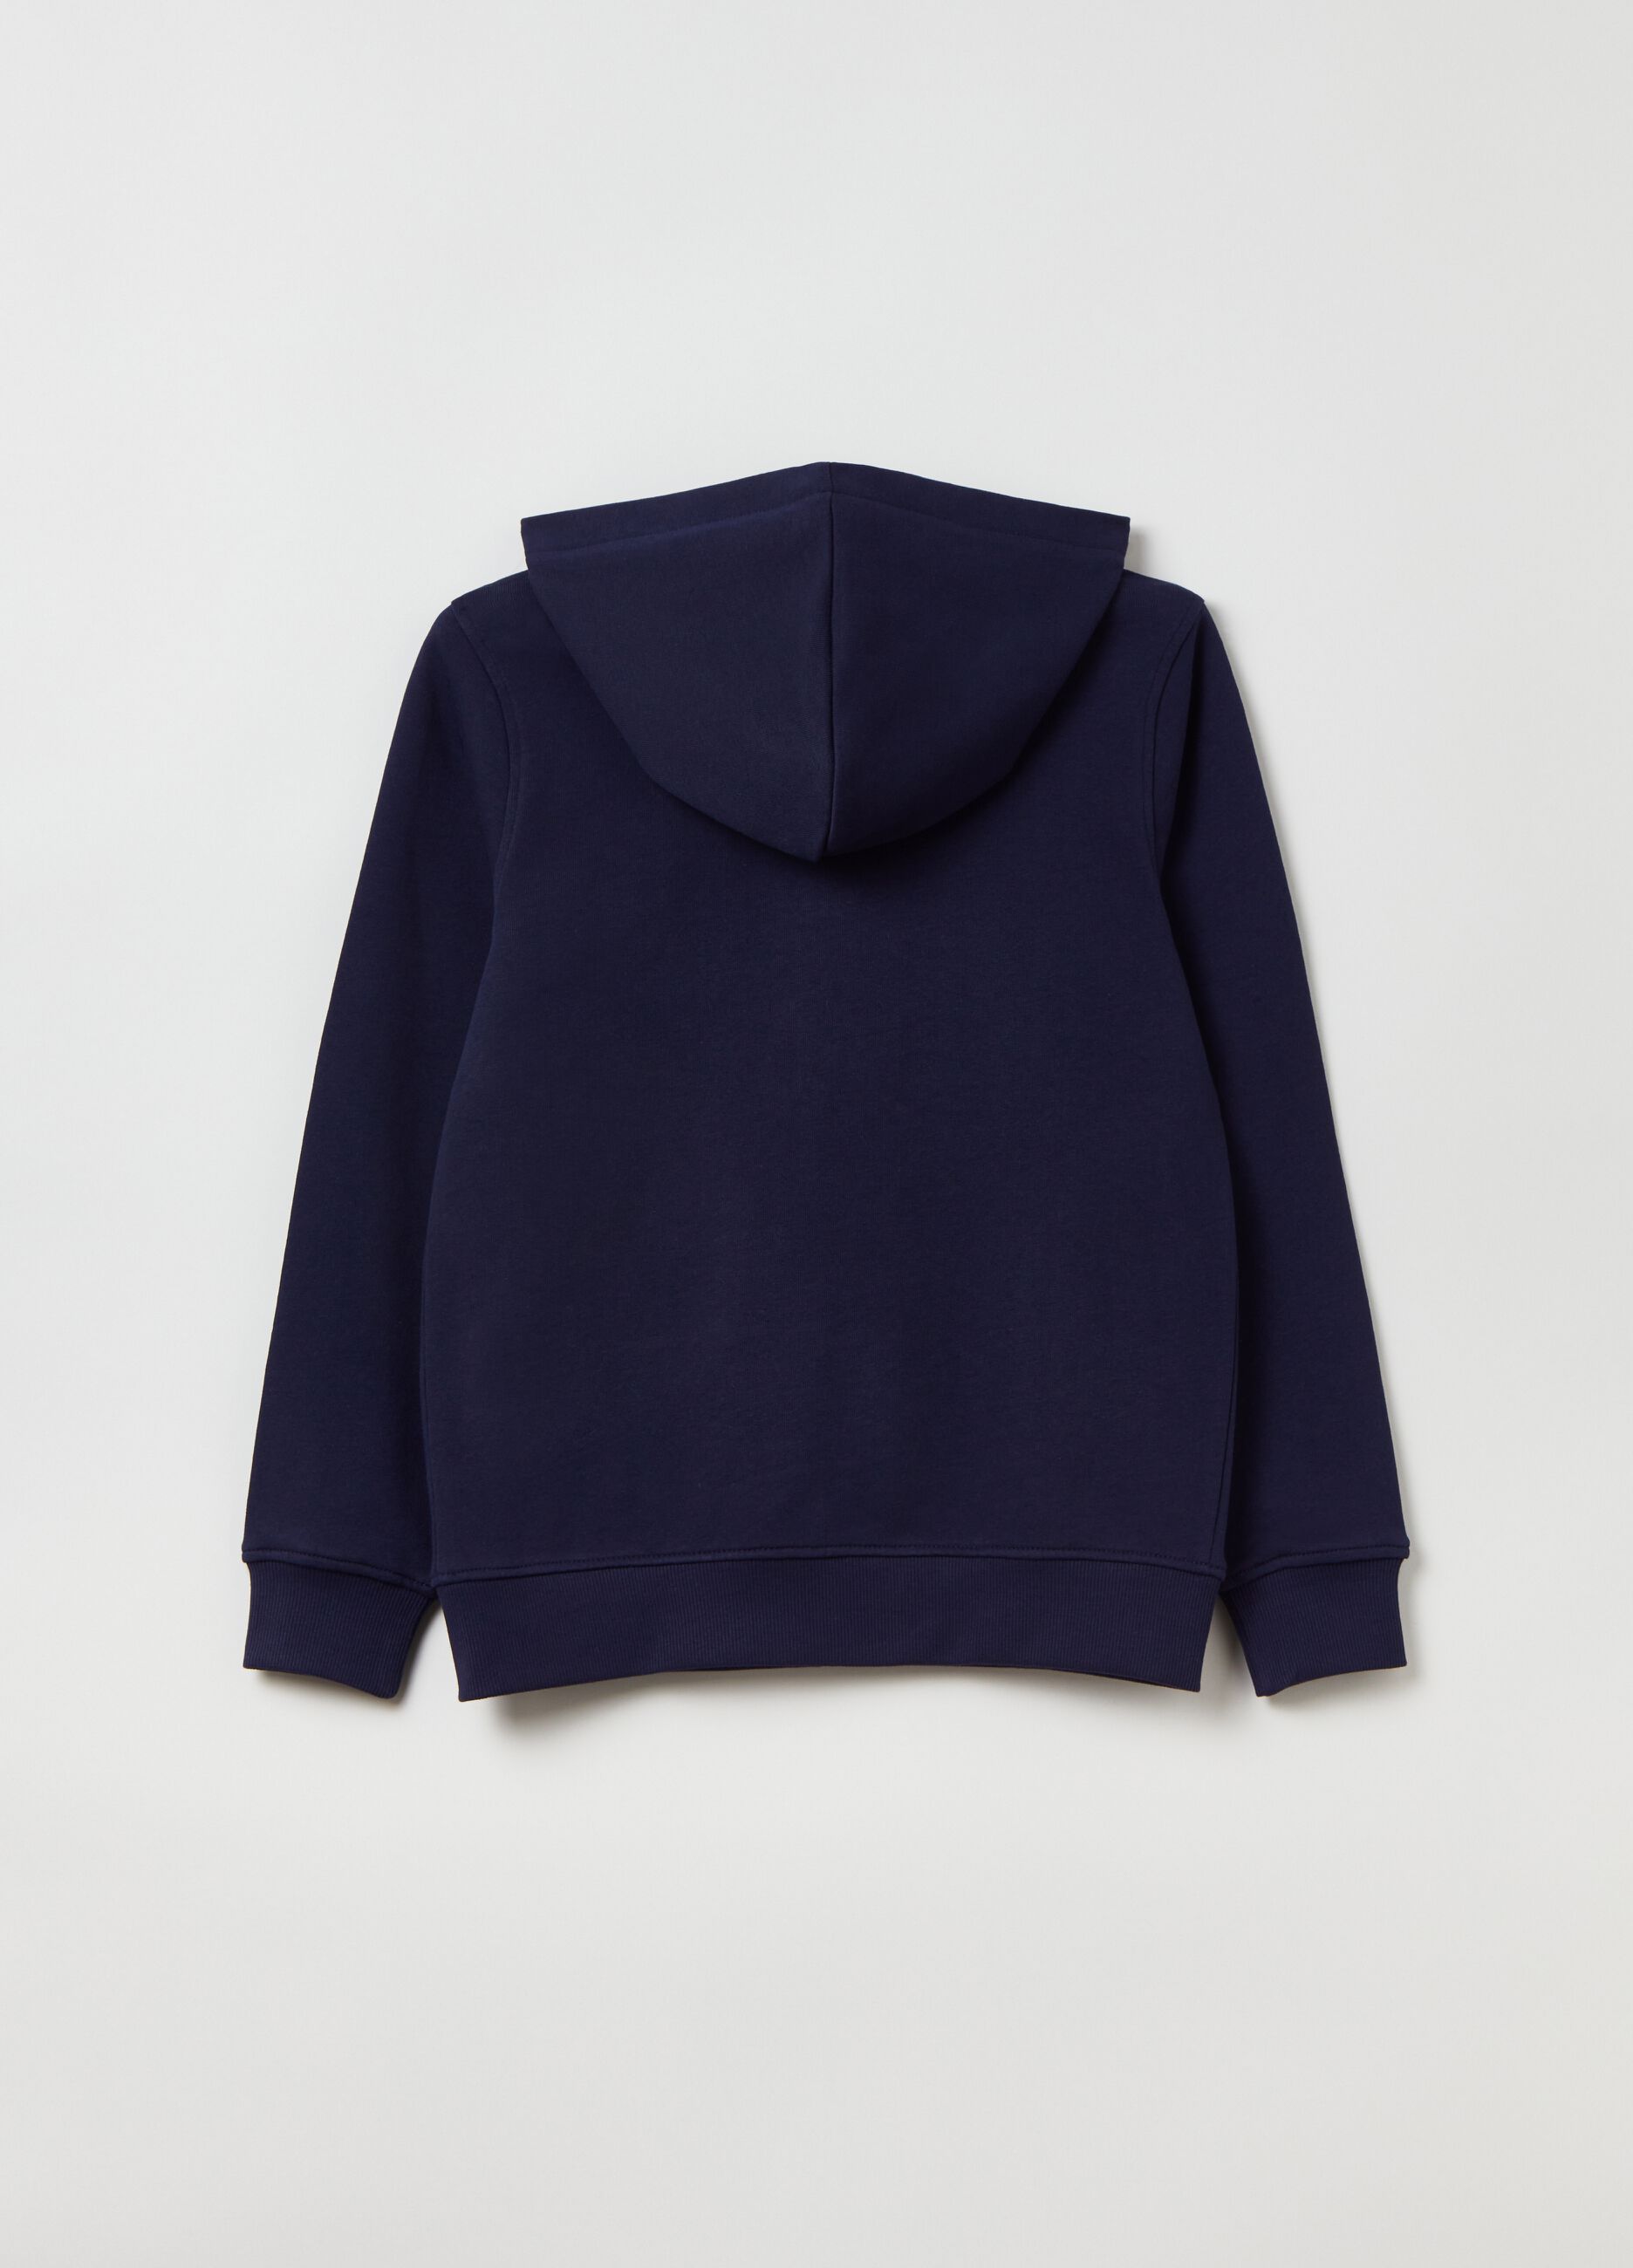 Full-zip fleece sweatshirt with lettering patch